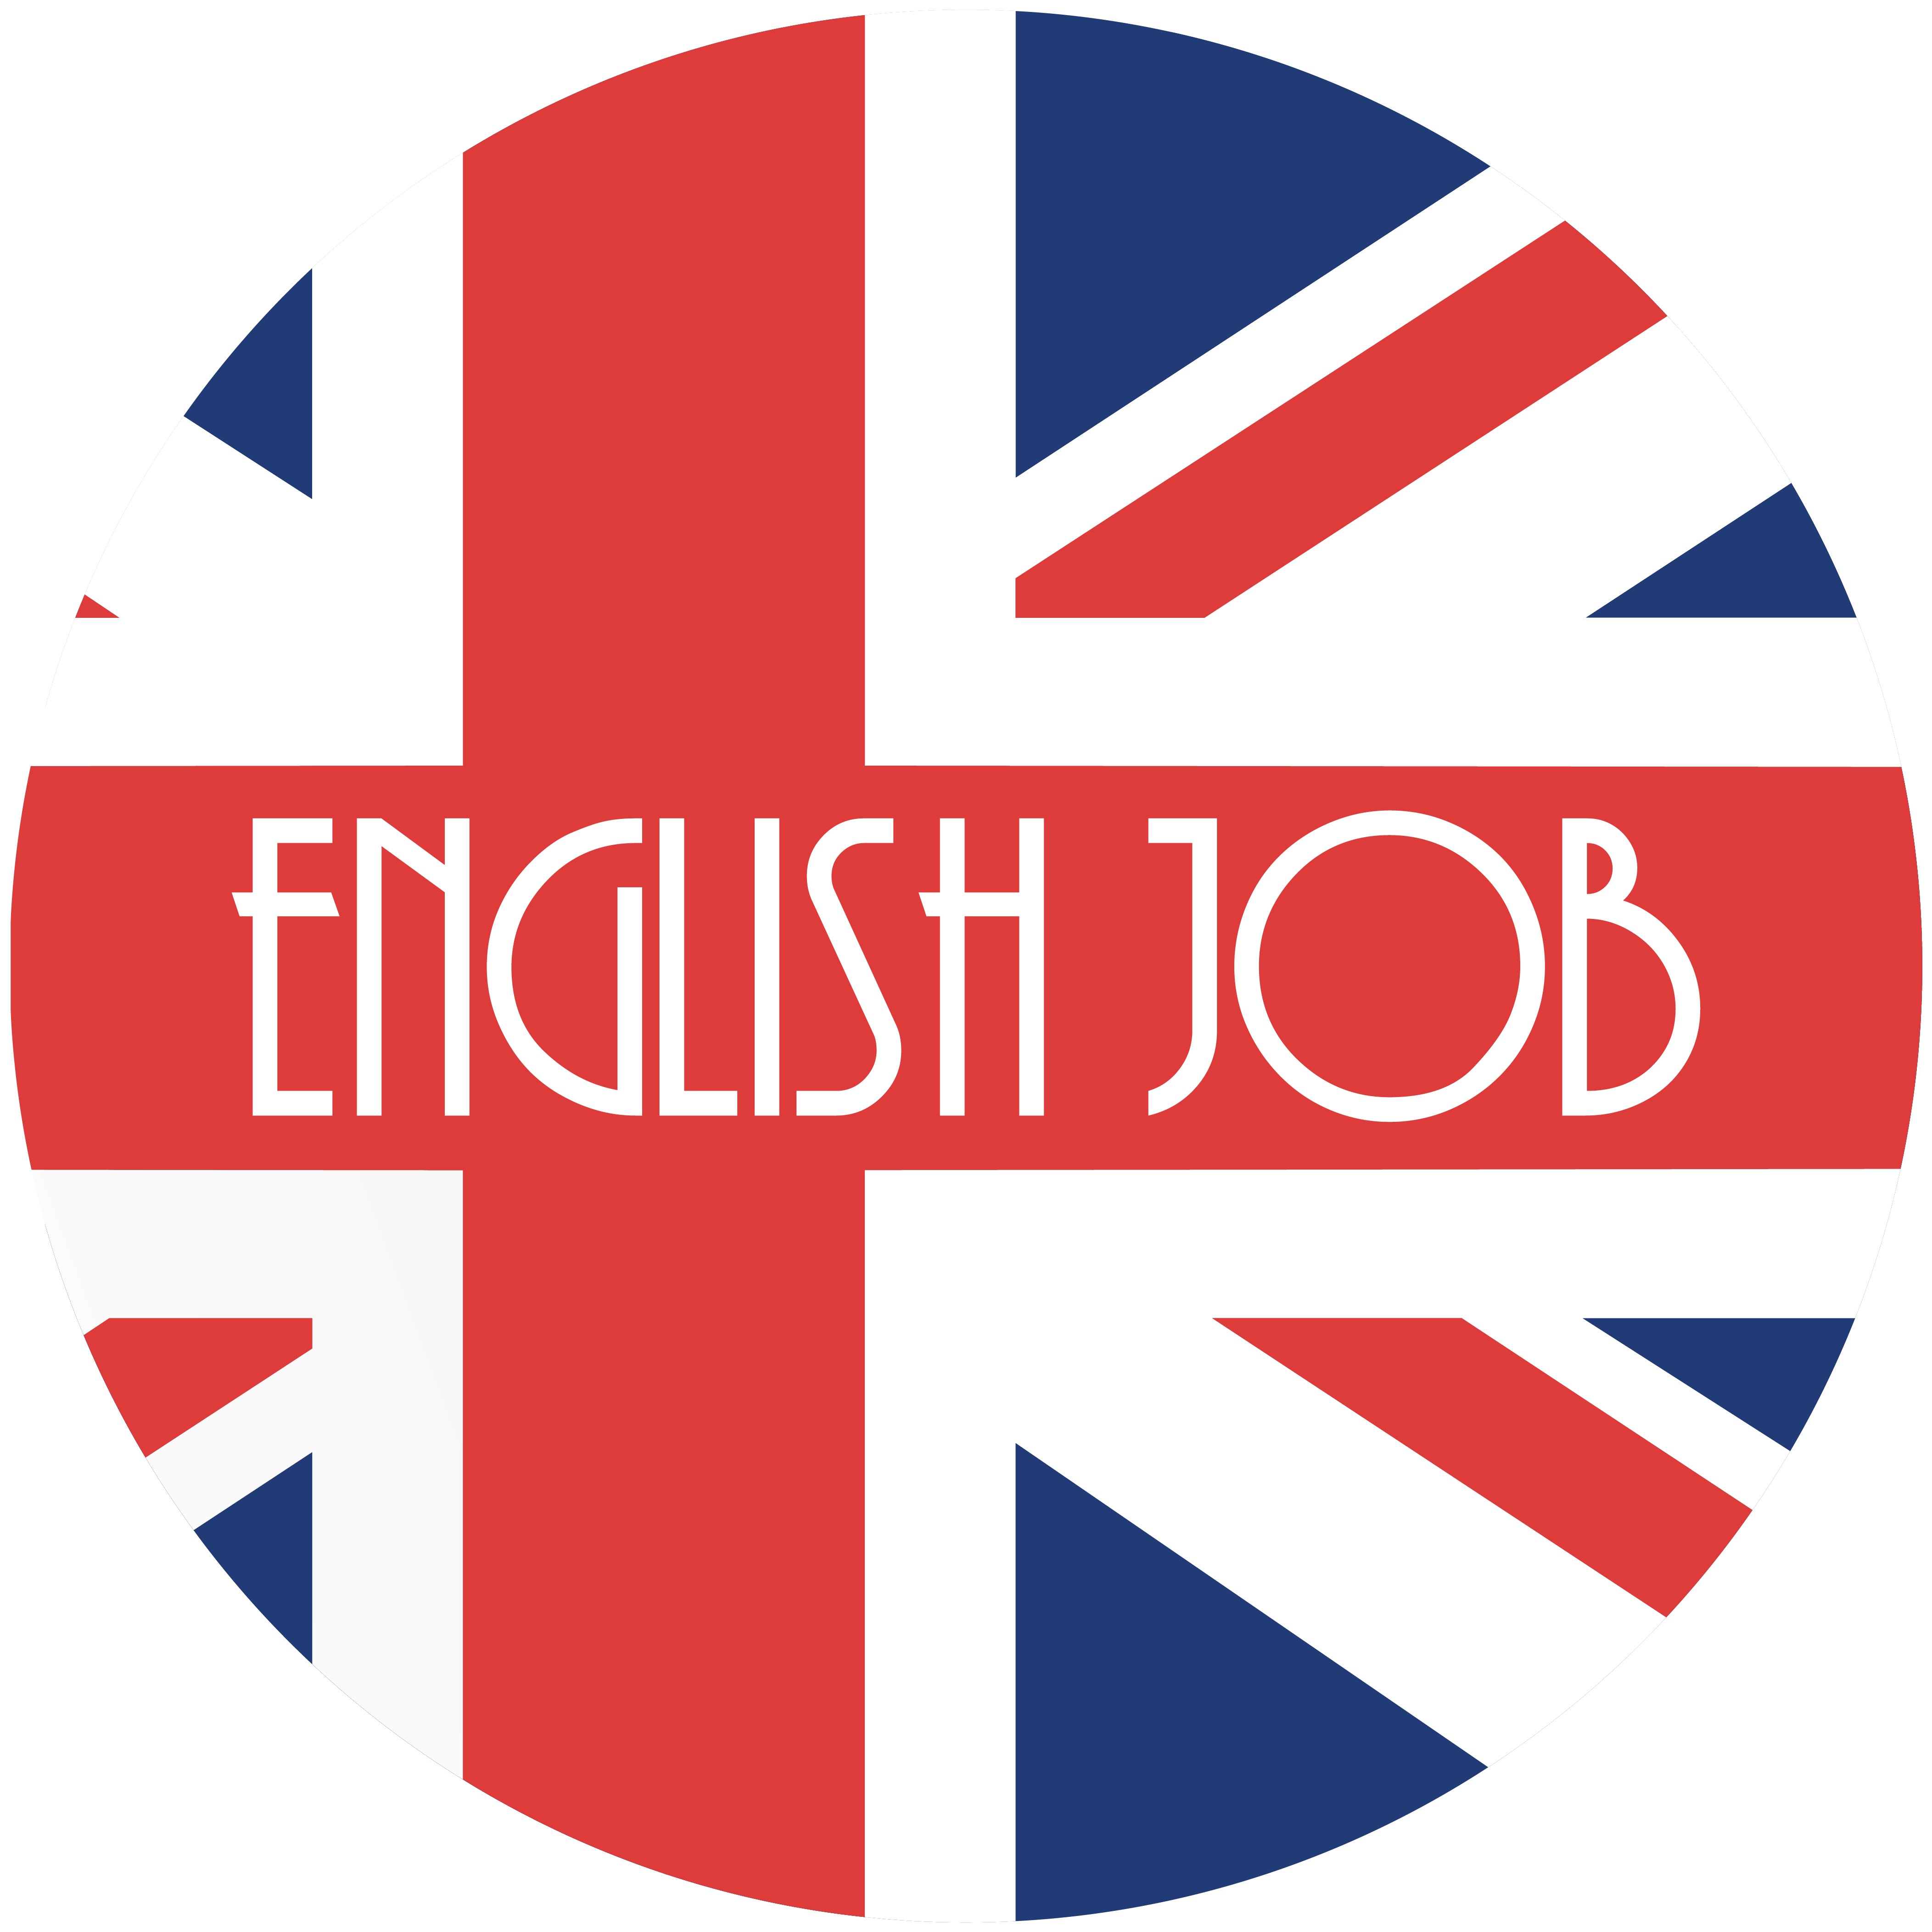 Englishjob